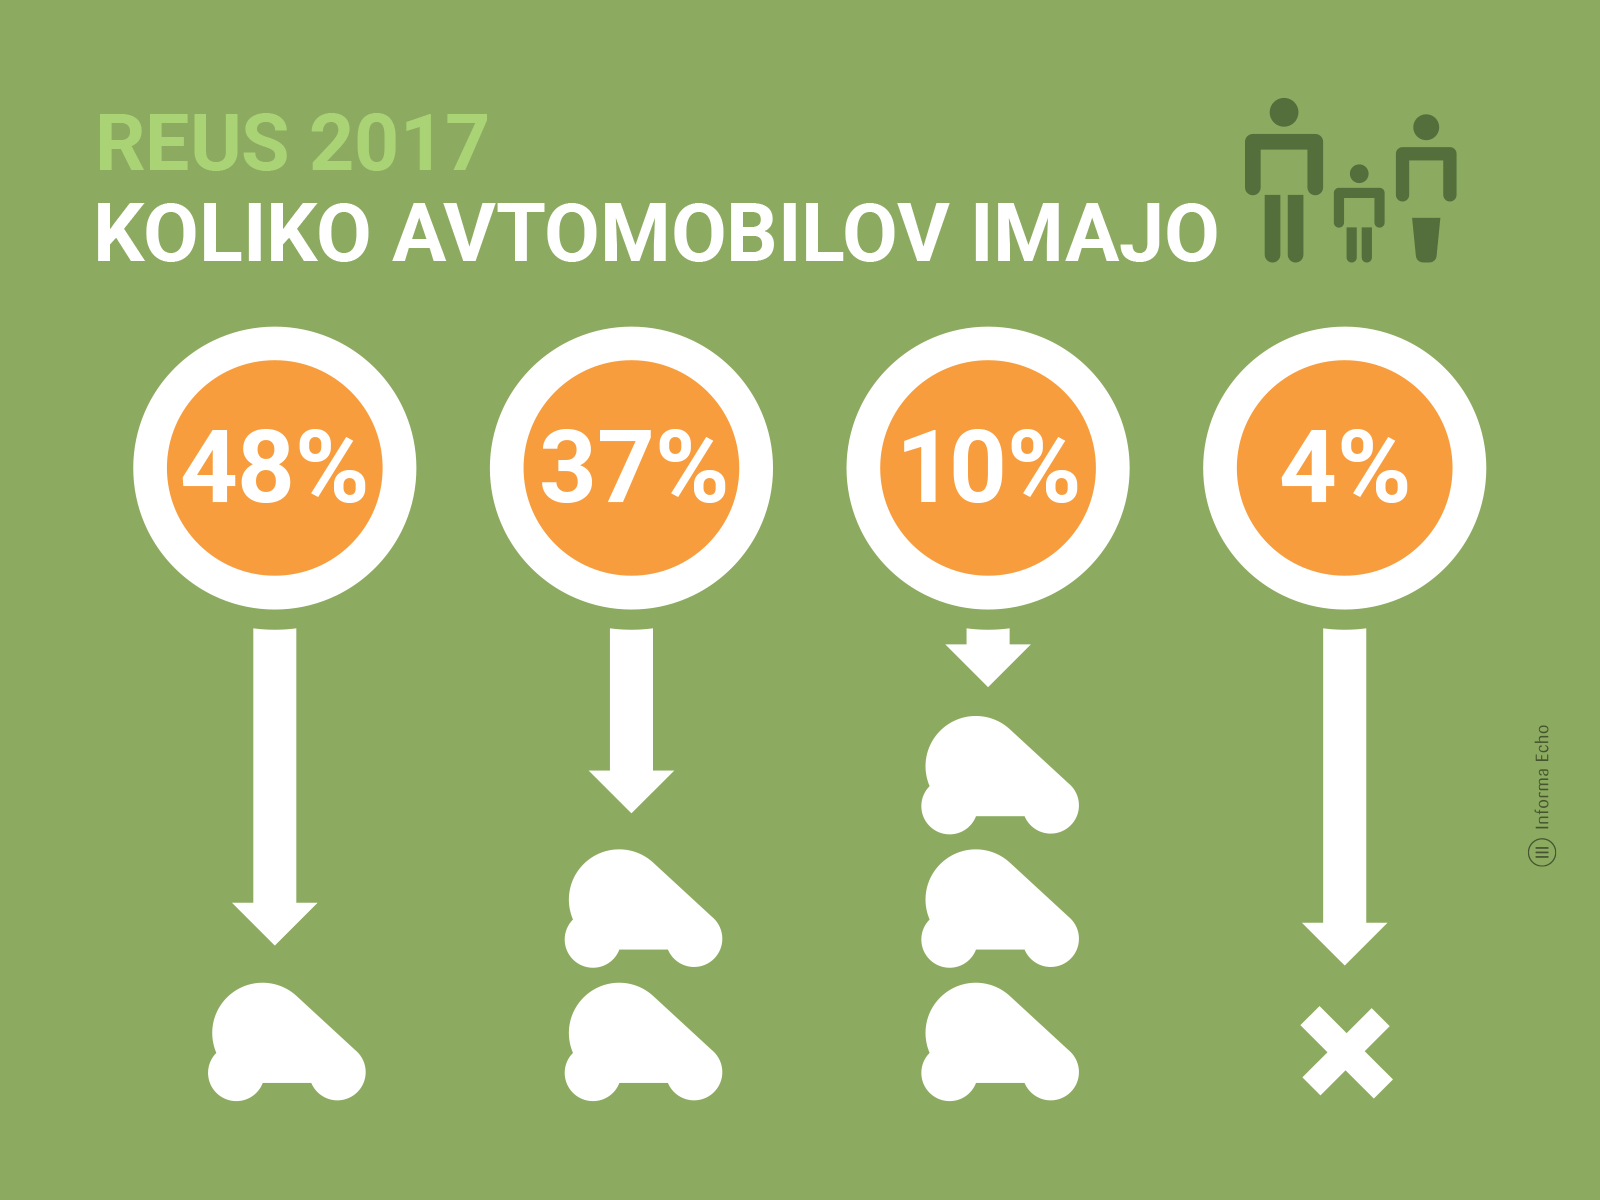 Koliko avtomobilov uporabljajo v slovenskih gospodinjstvih / Raziskava REUS 2017